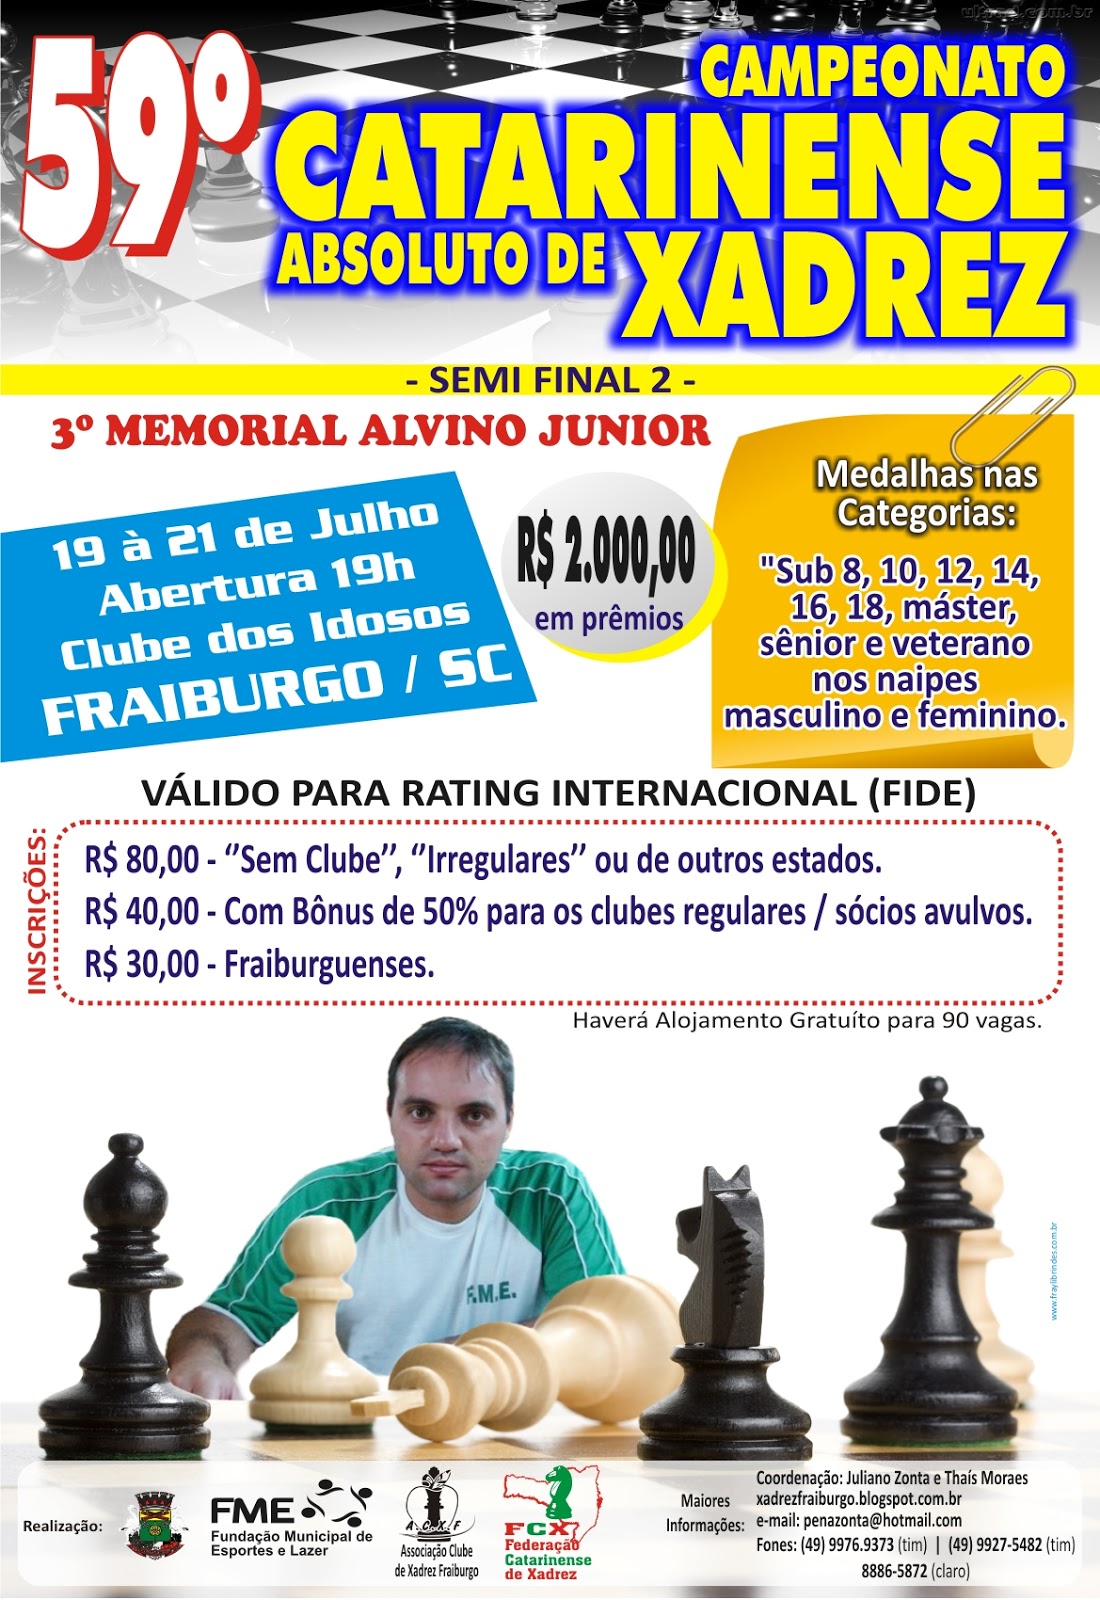 Federação Catarinense de Xadrez - FCX - (Novidades) - Enxadrista de Lages é  Candidato à Mestre com apenas 10 anos